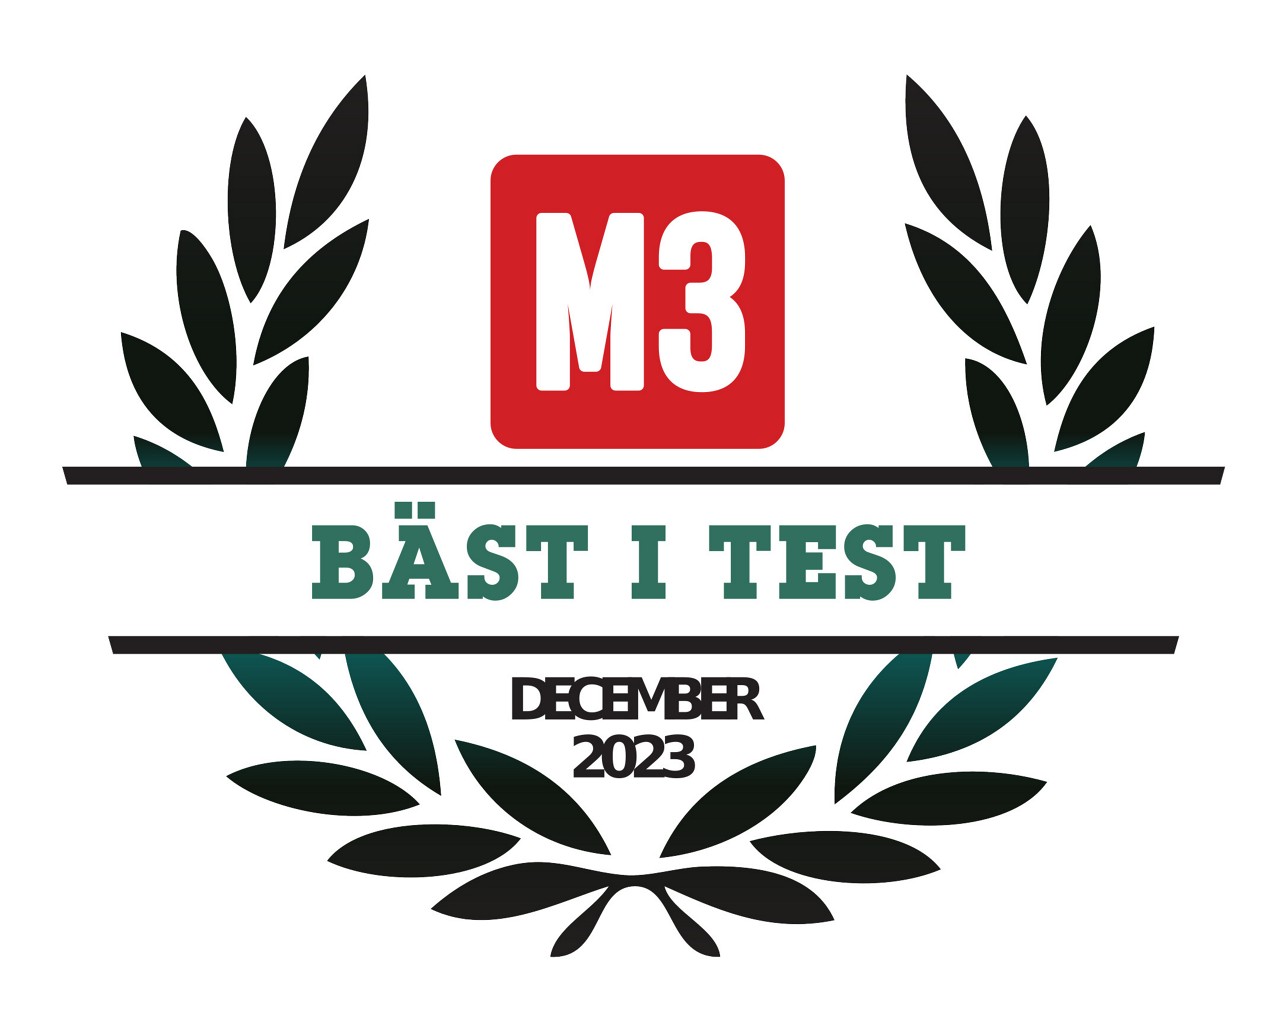 M3 best i test december 2023